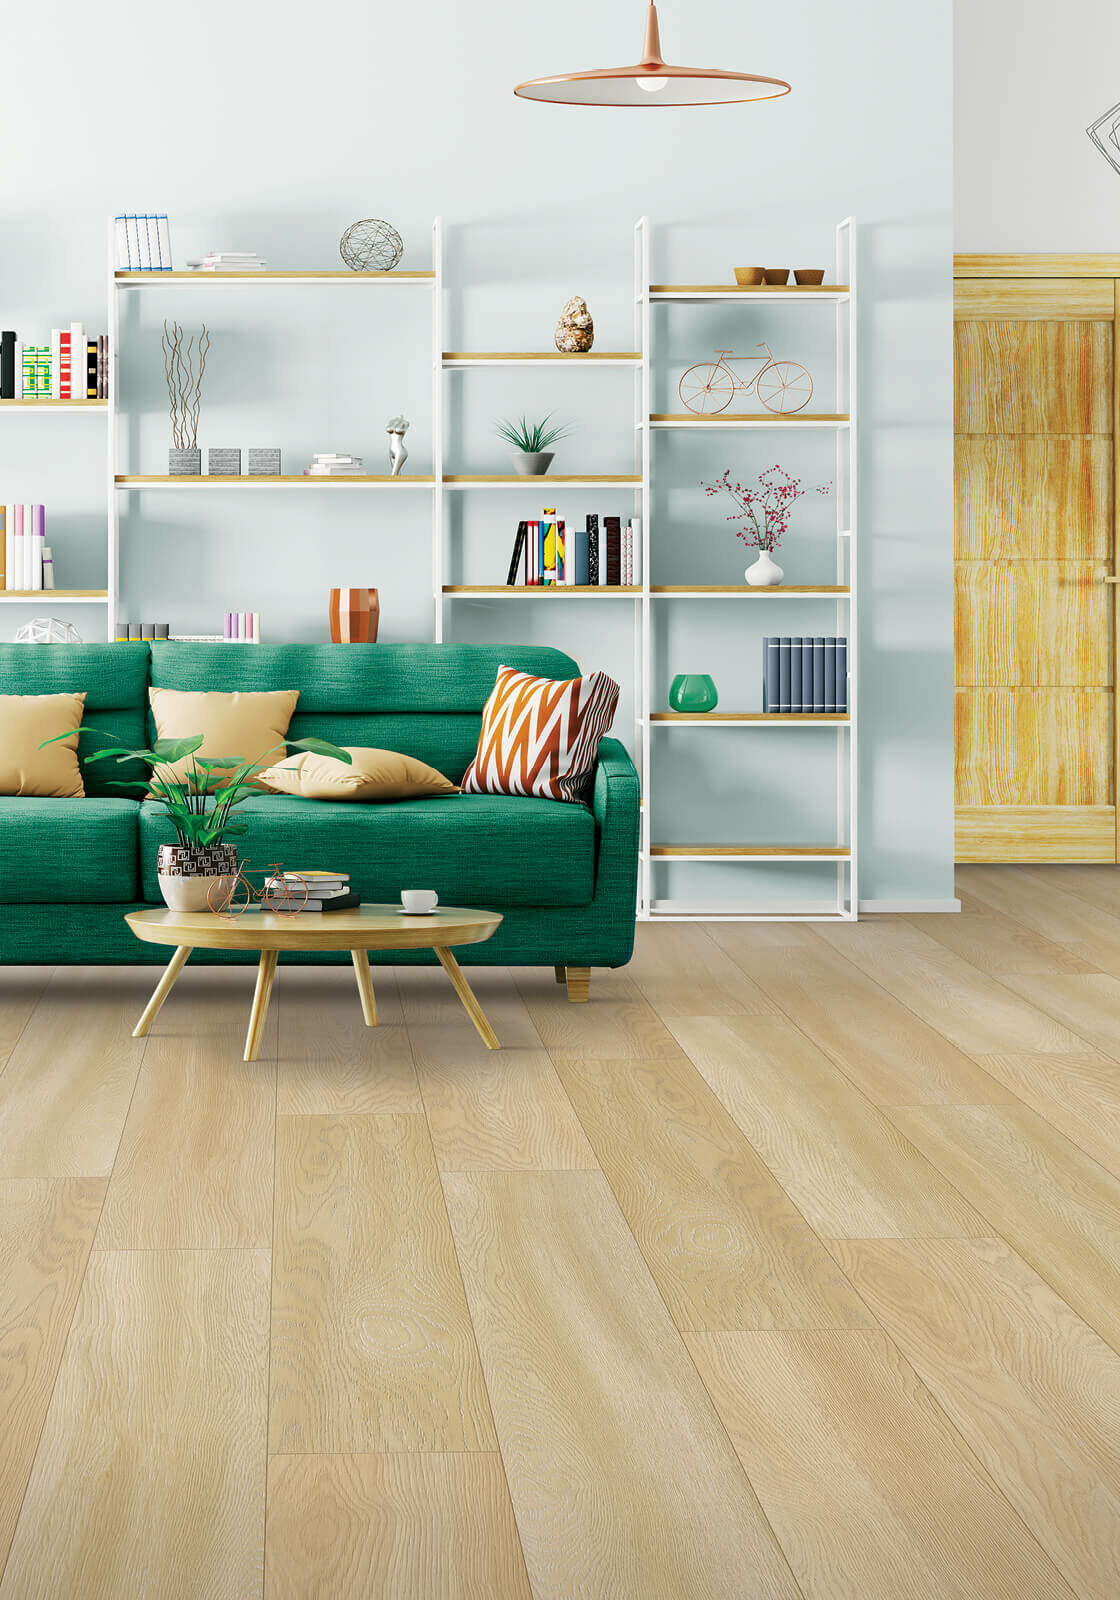 Green sofa in living room | Contractors Carpet & Flooring